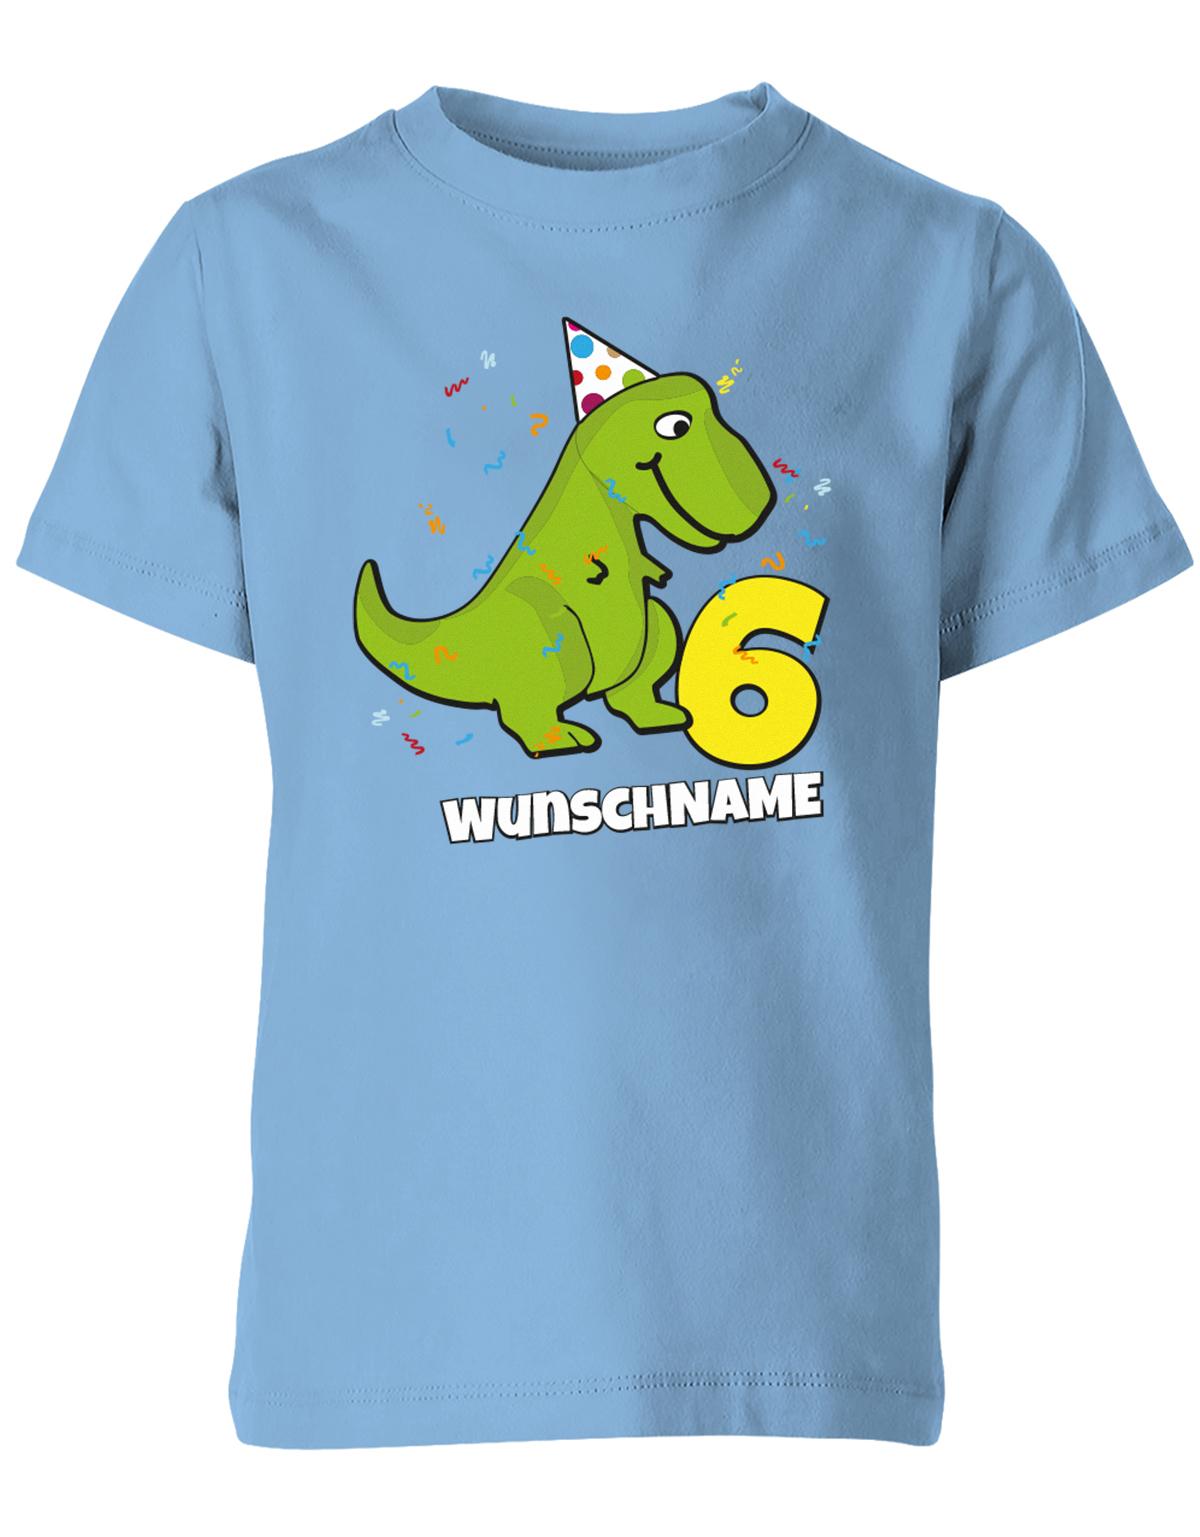 ich-bin-6-Dinosaurier-t-rex-wunschname-geburtstag-kinder-shirt-hellblau